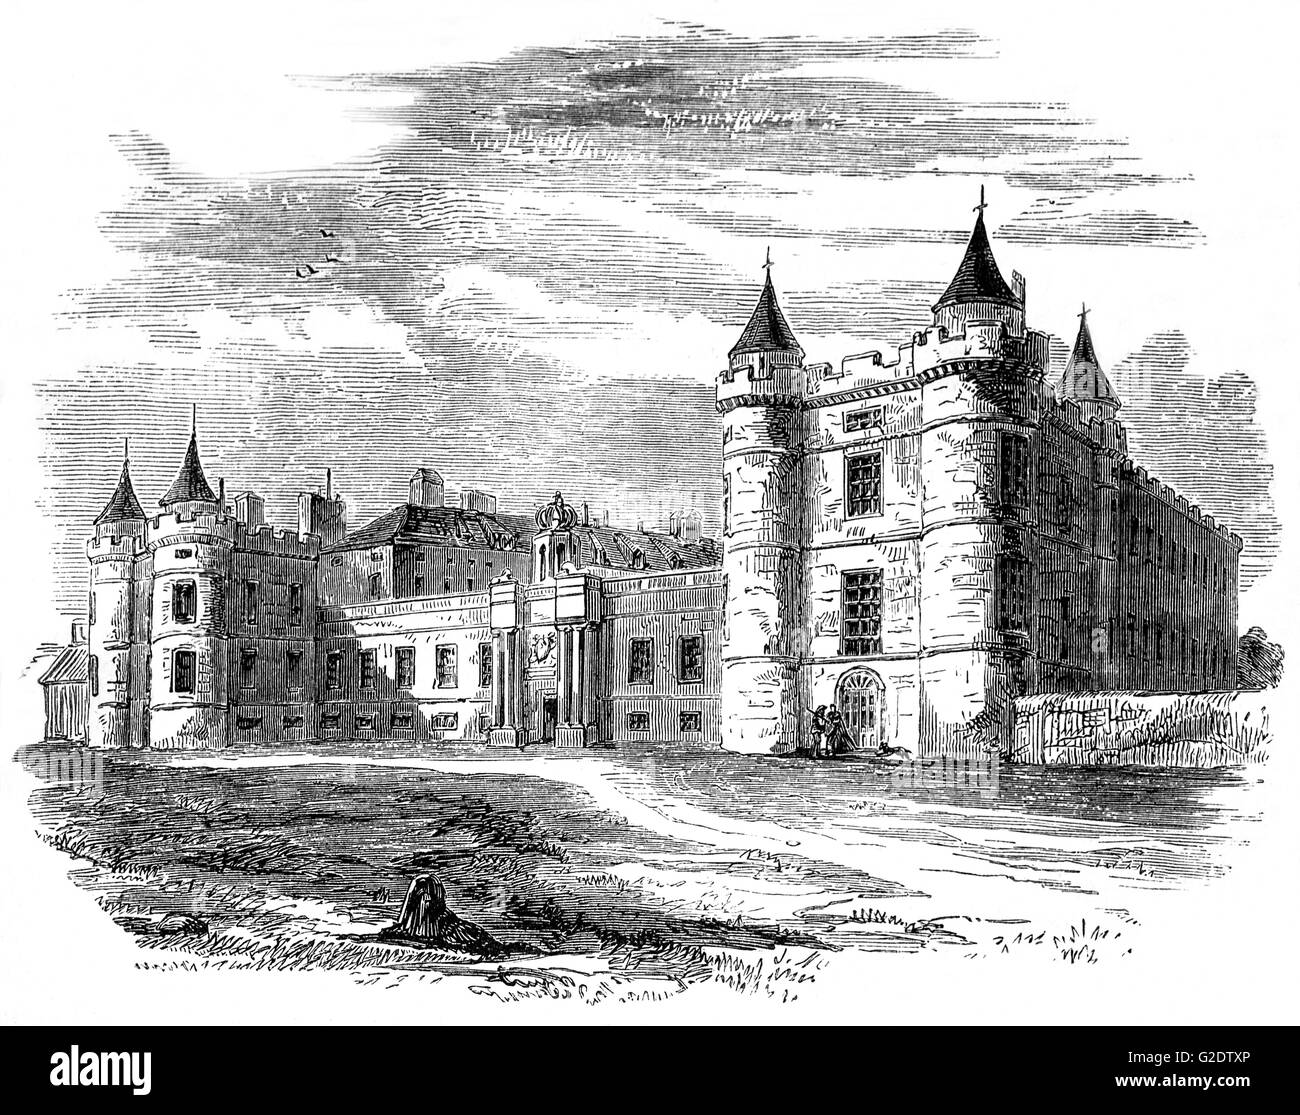 16e siècle, Holyrood Palace est la résidence officielle de la monarchie britannique en Ecosse. Situé au bas du Royal Mile d'Édimbourg, à l'extrémité opposée au château d'Édimbourg, du palais de Holyrood a servi comme résidence principale des Rois et Reines d'Écosse. Banque D'Images